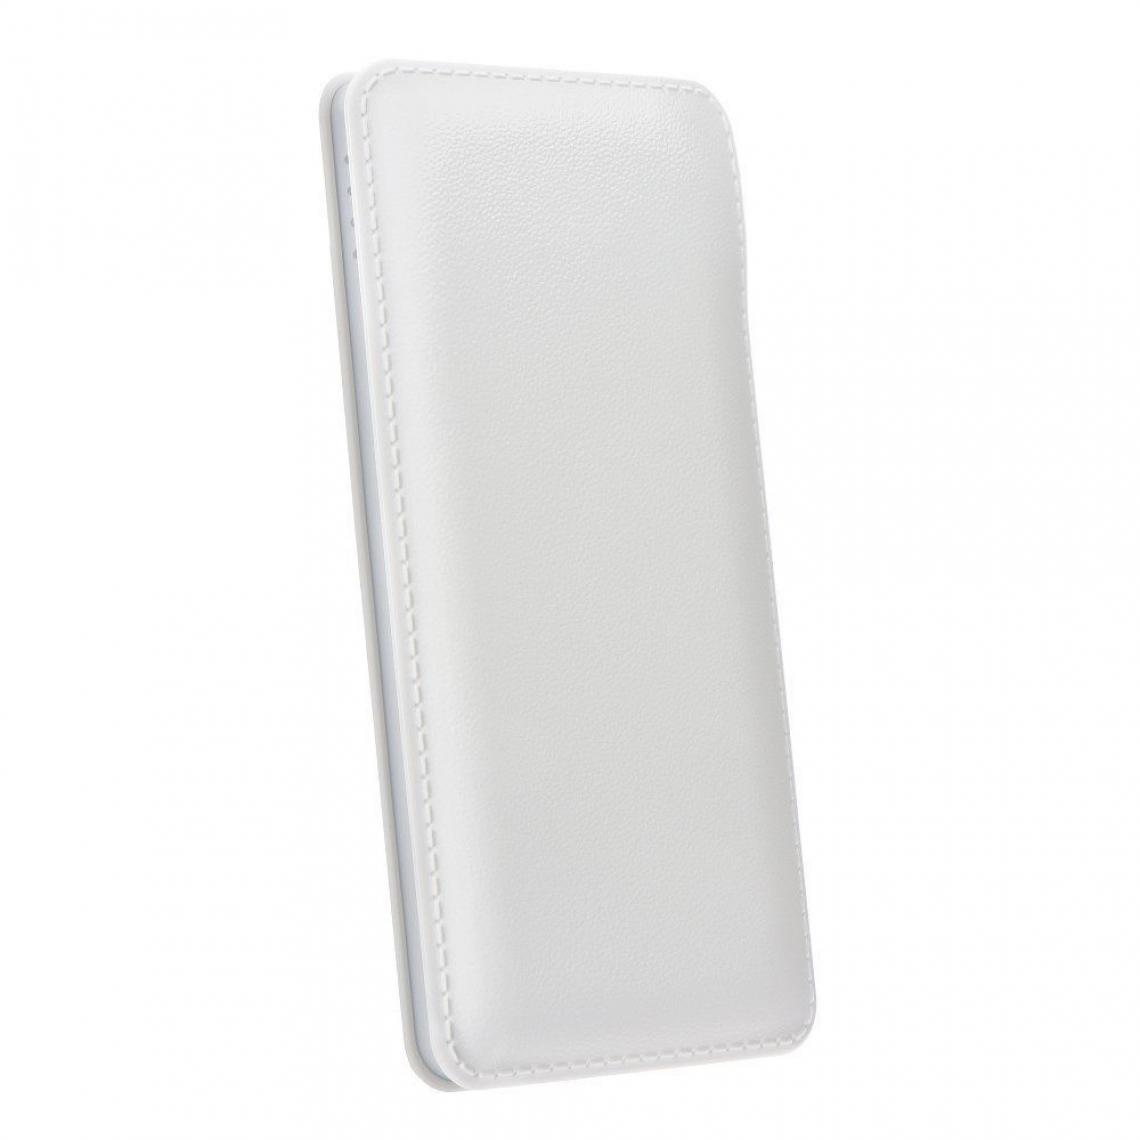 Ozzzo - Chargeur batterie externe 30000 mAh powerbank ozzzo blanc pour LG Wing - Autres accessoires smartphone